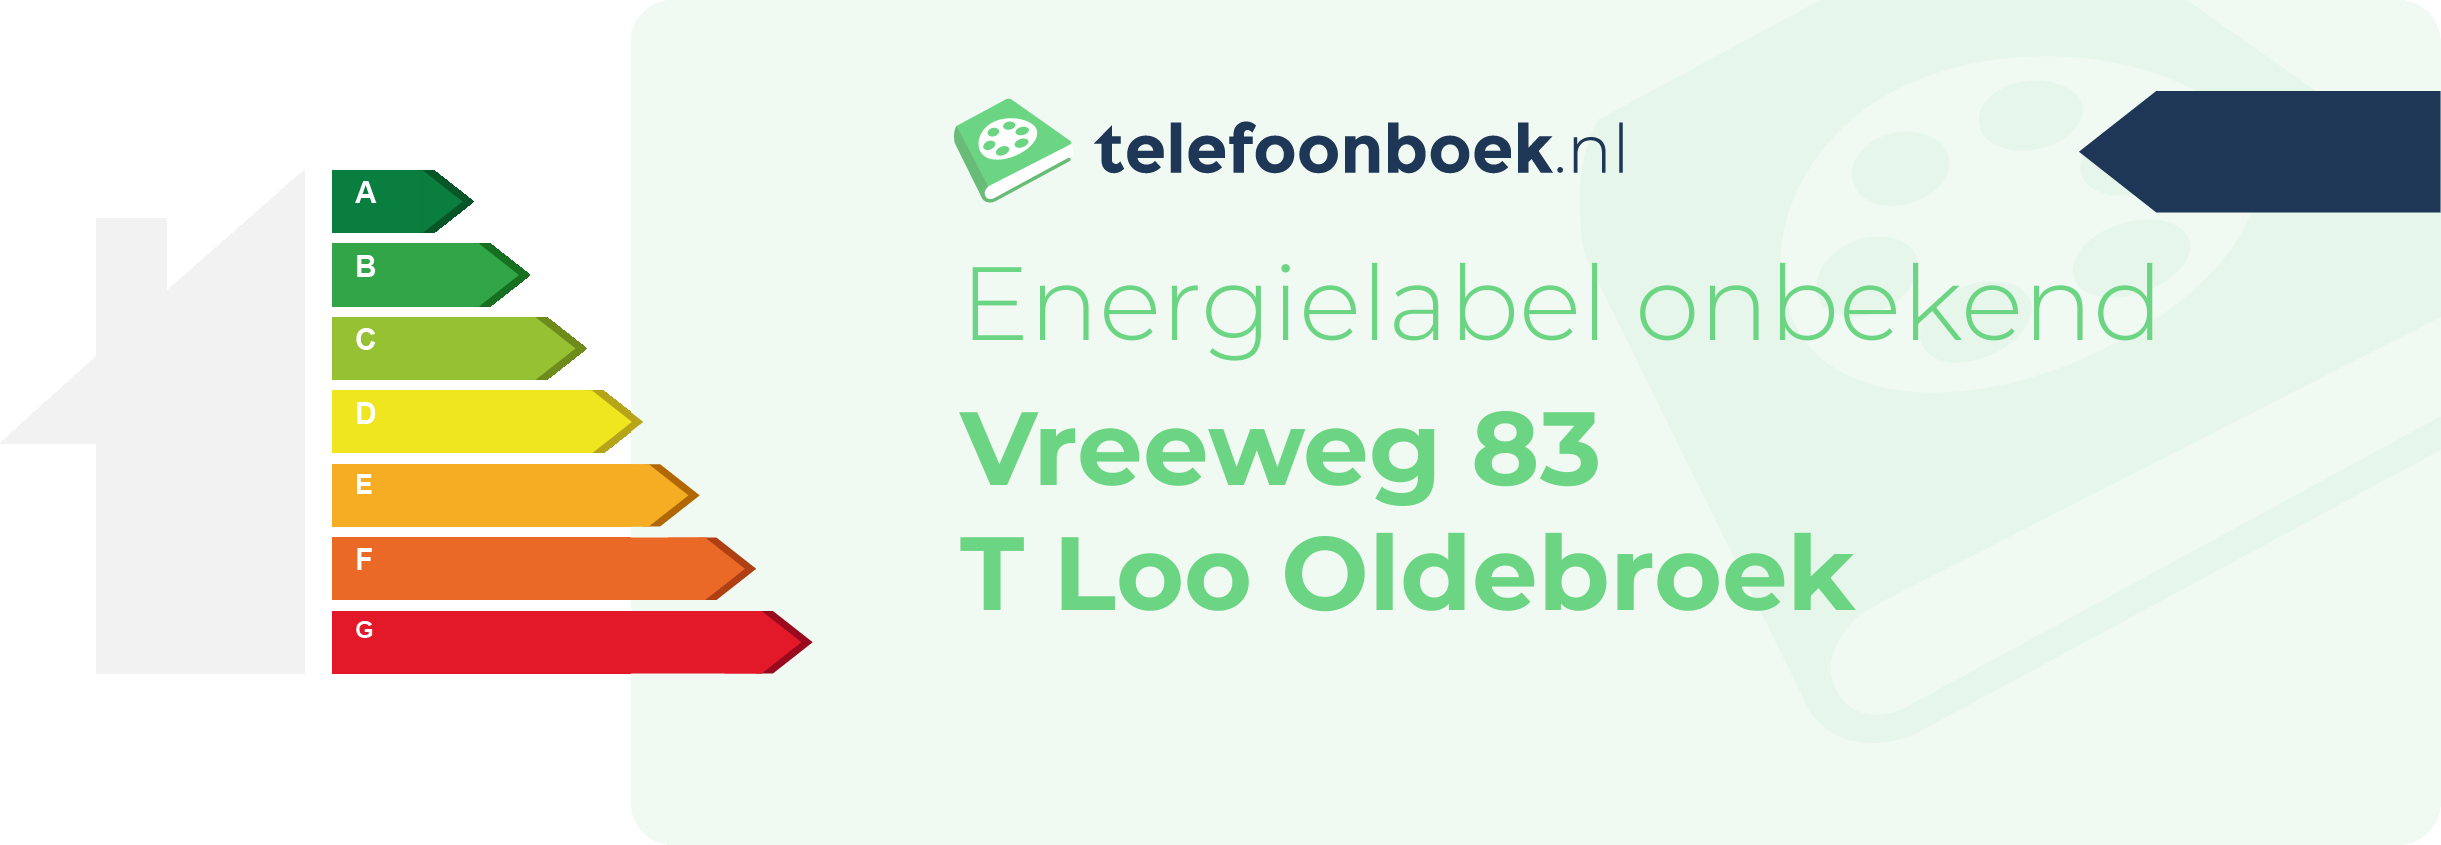 Energielabel Vreeweg 83 T Loo Oldebroek